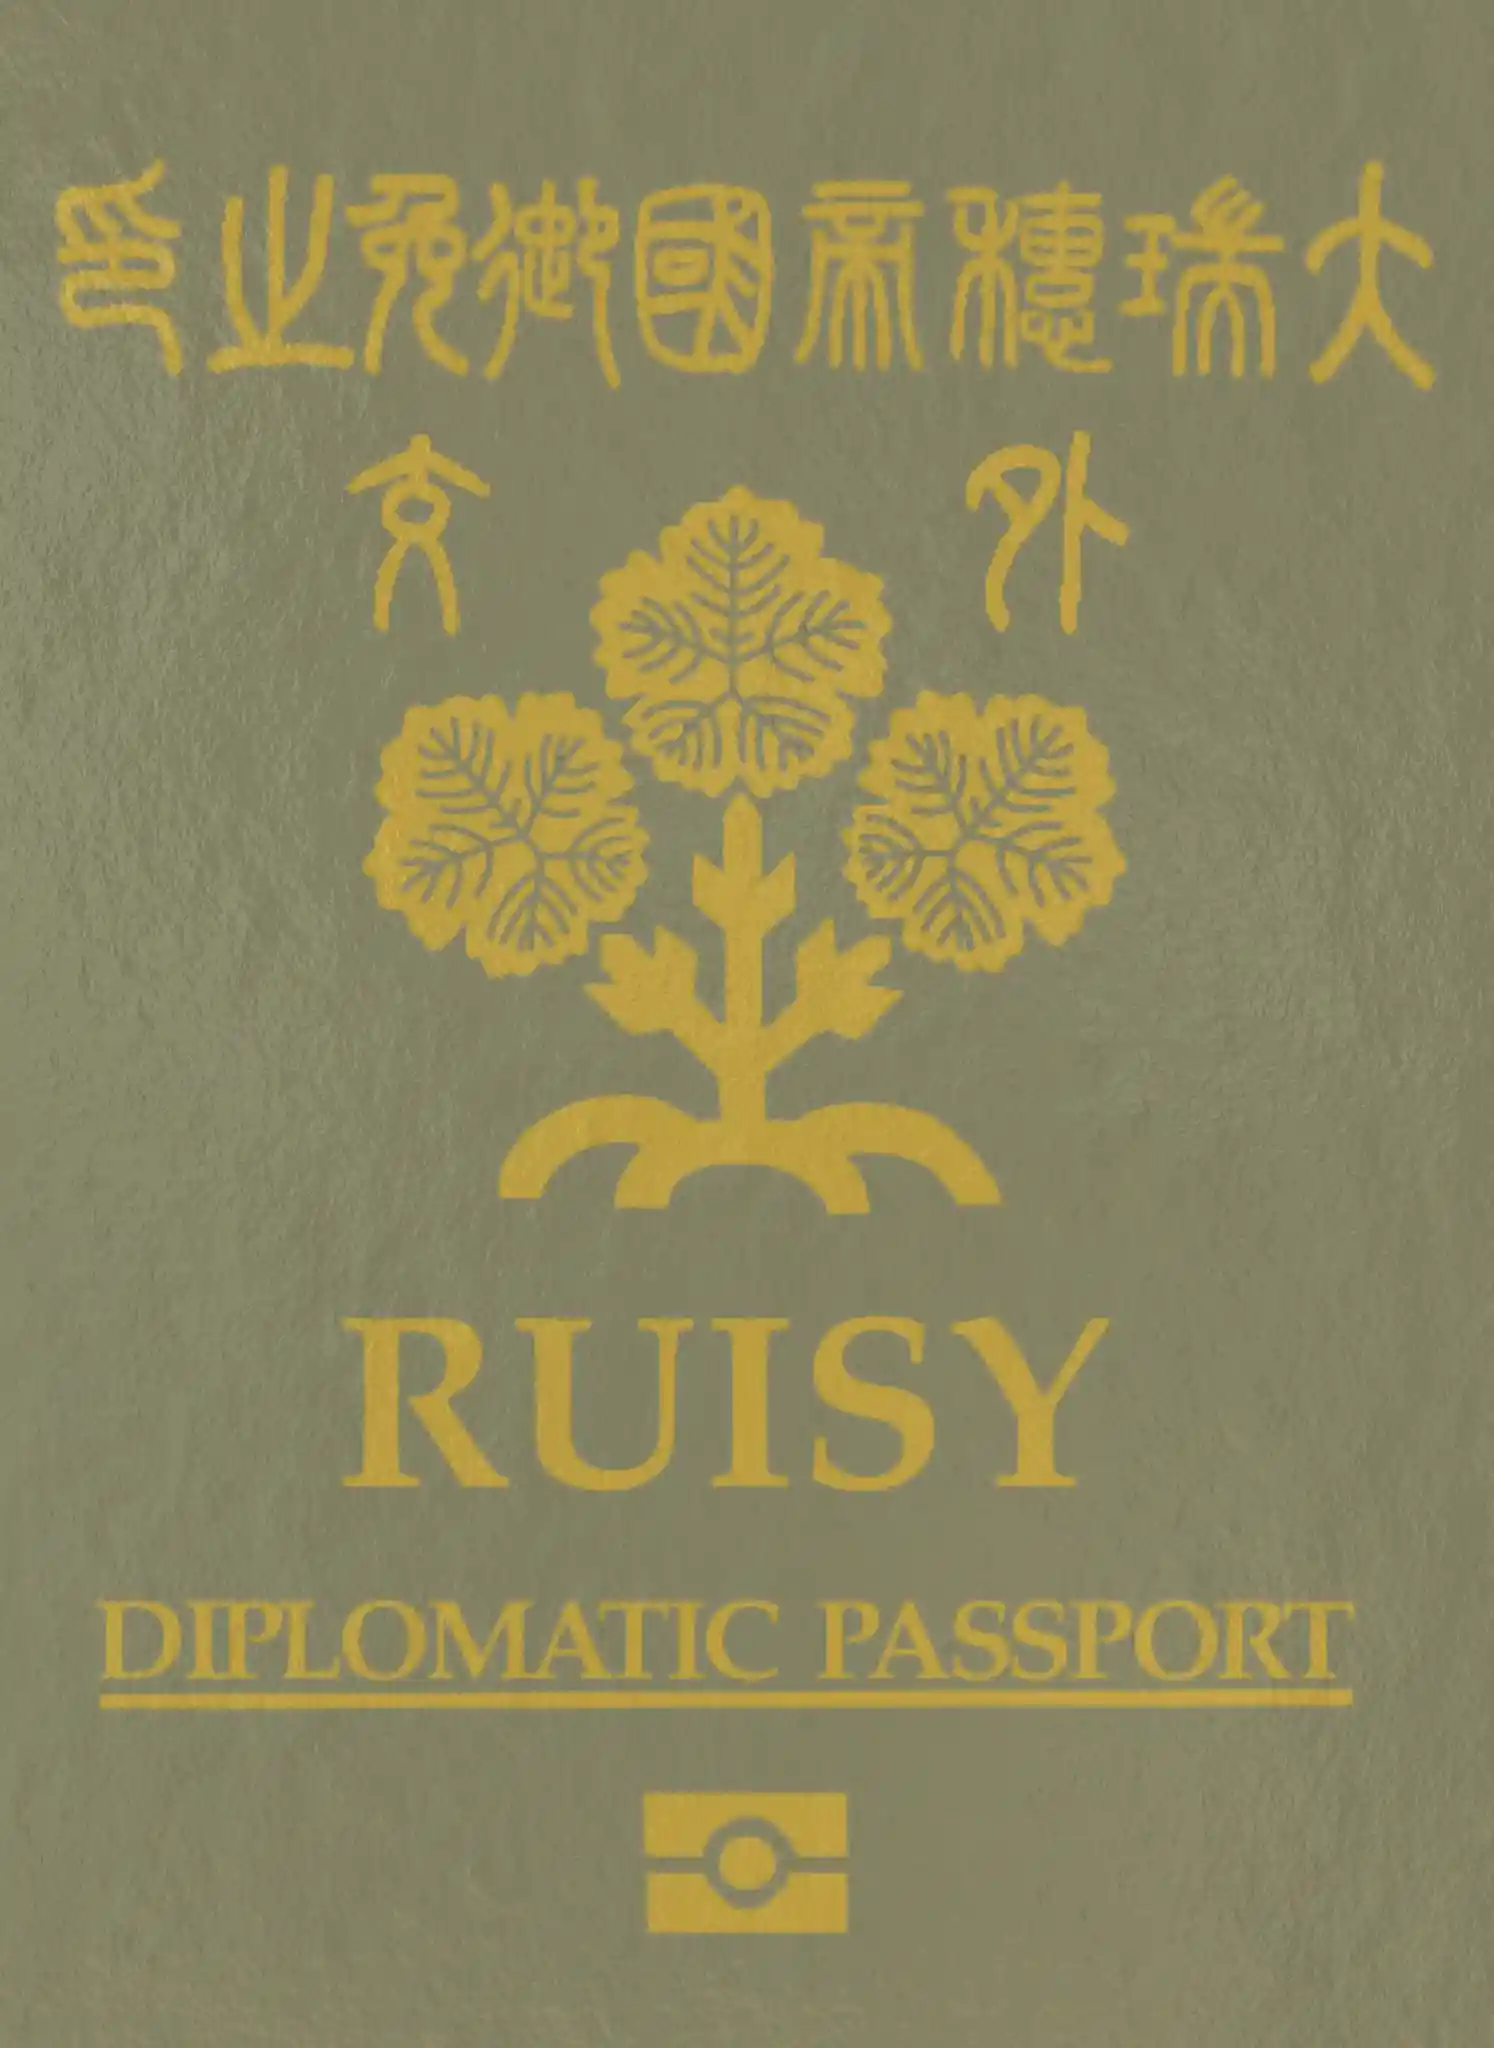 passport_diplomatic.jpg